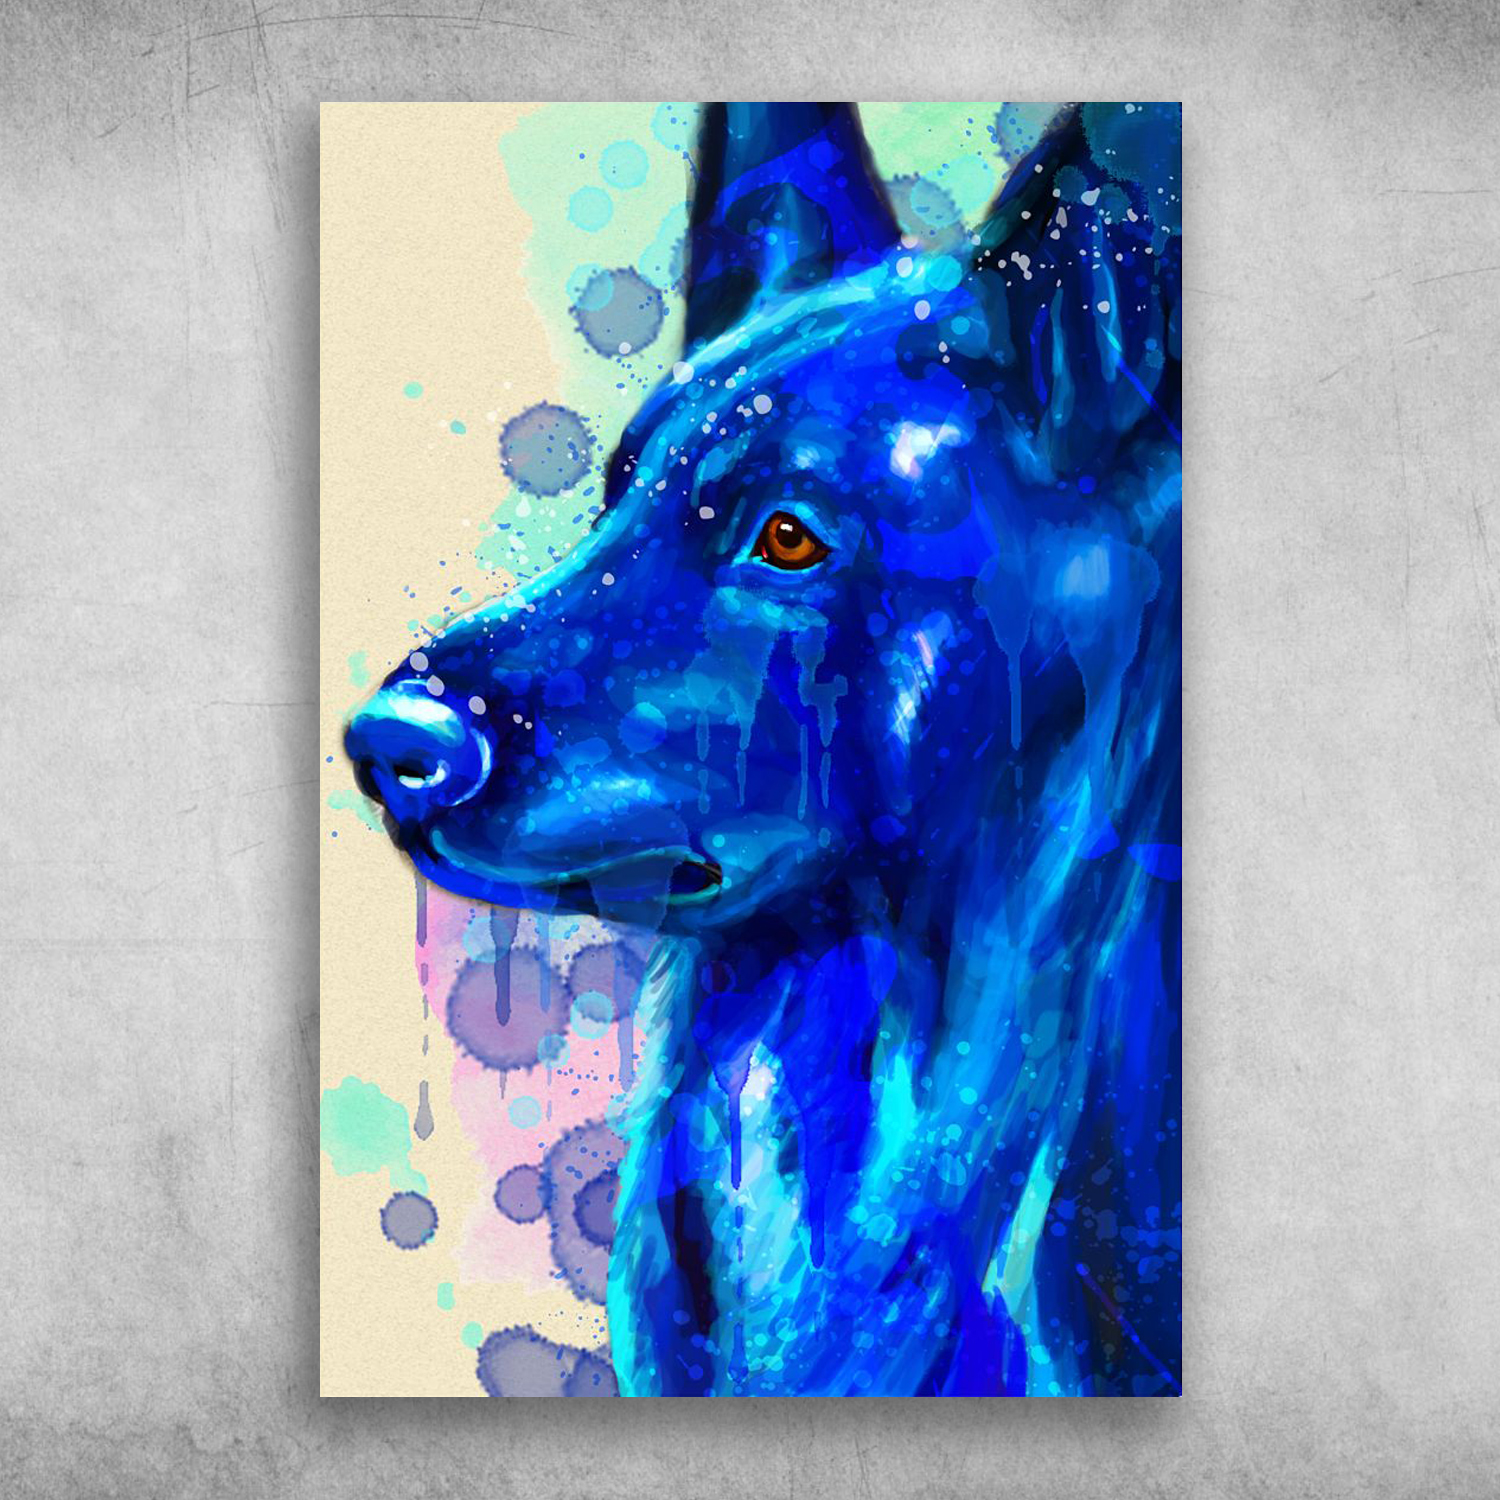 Beautiful Blue Watercolor Painting Of Old German Shepherd Dog